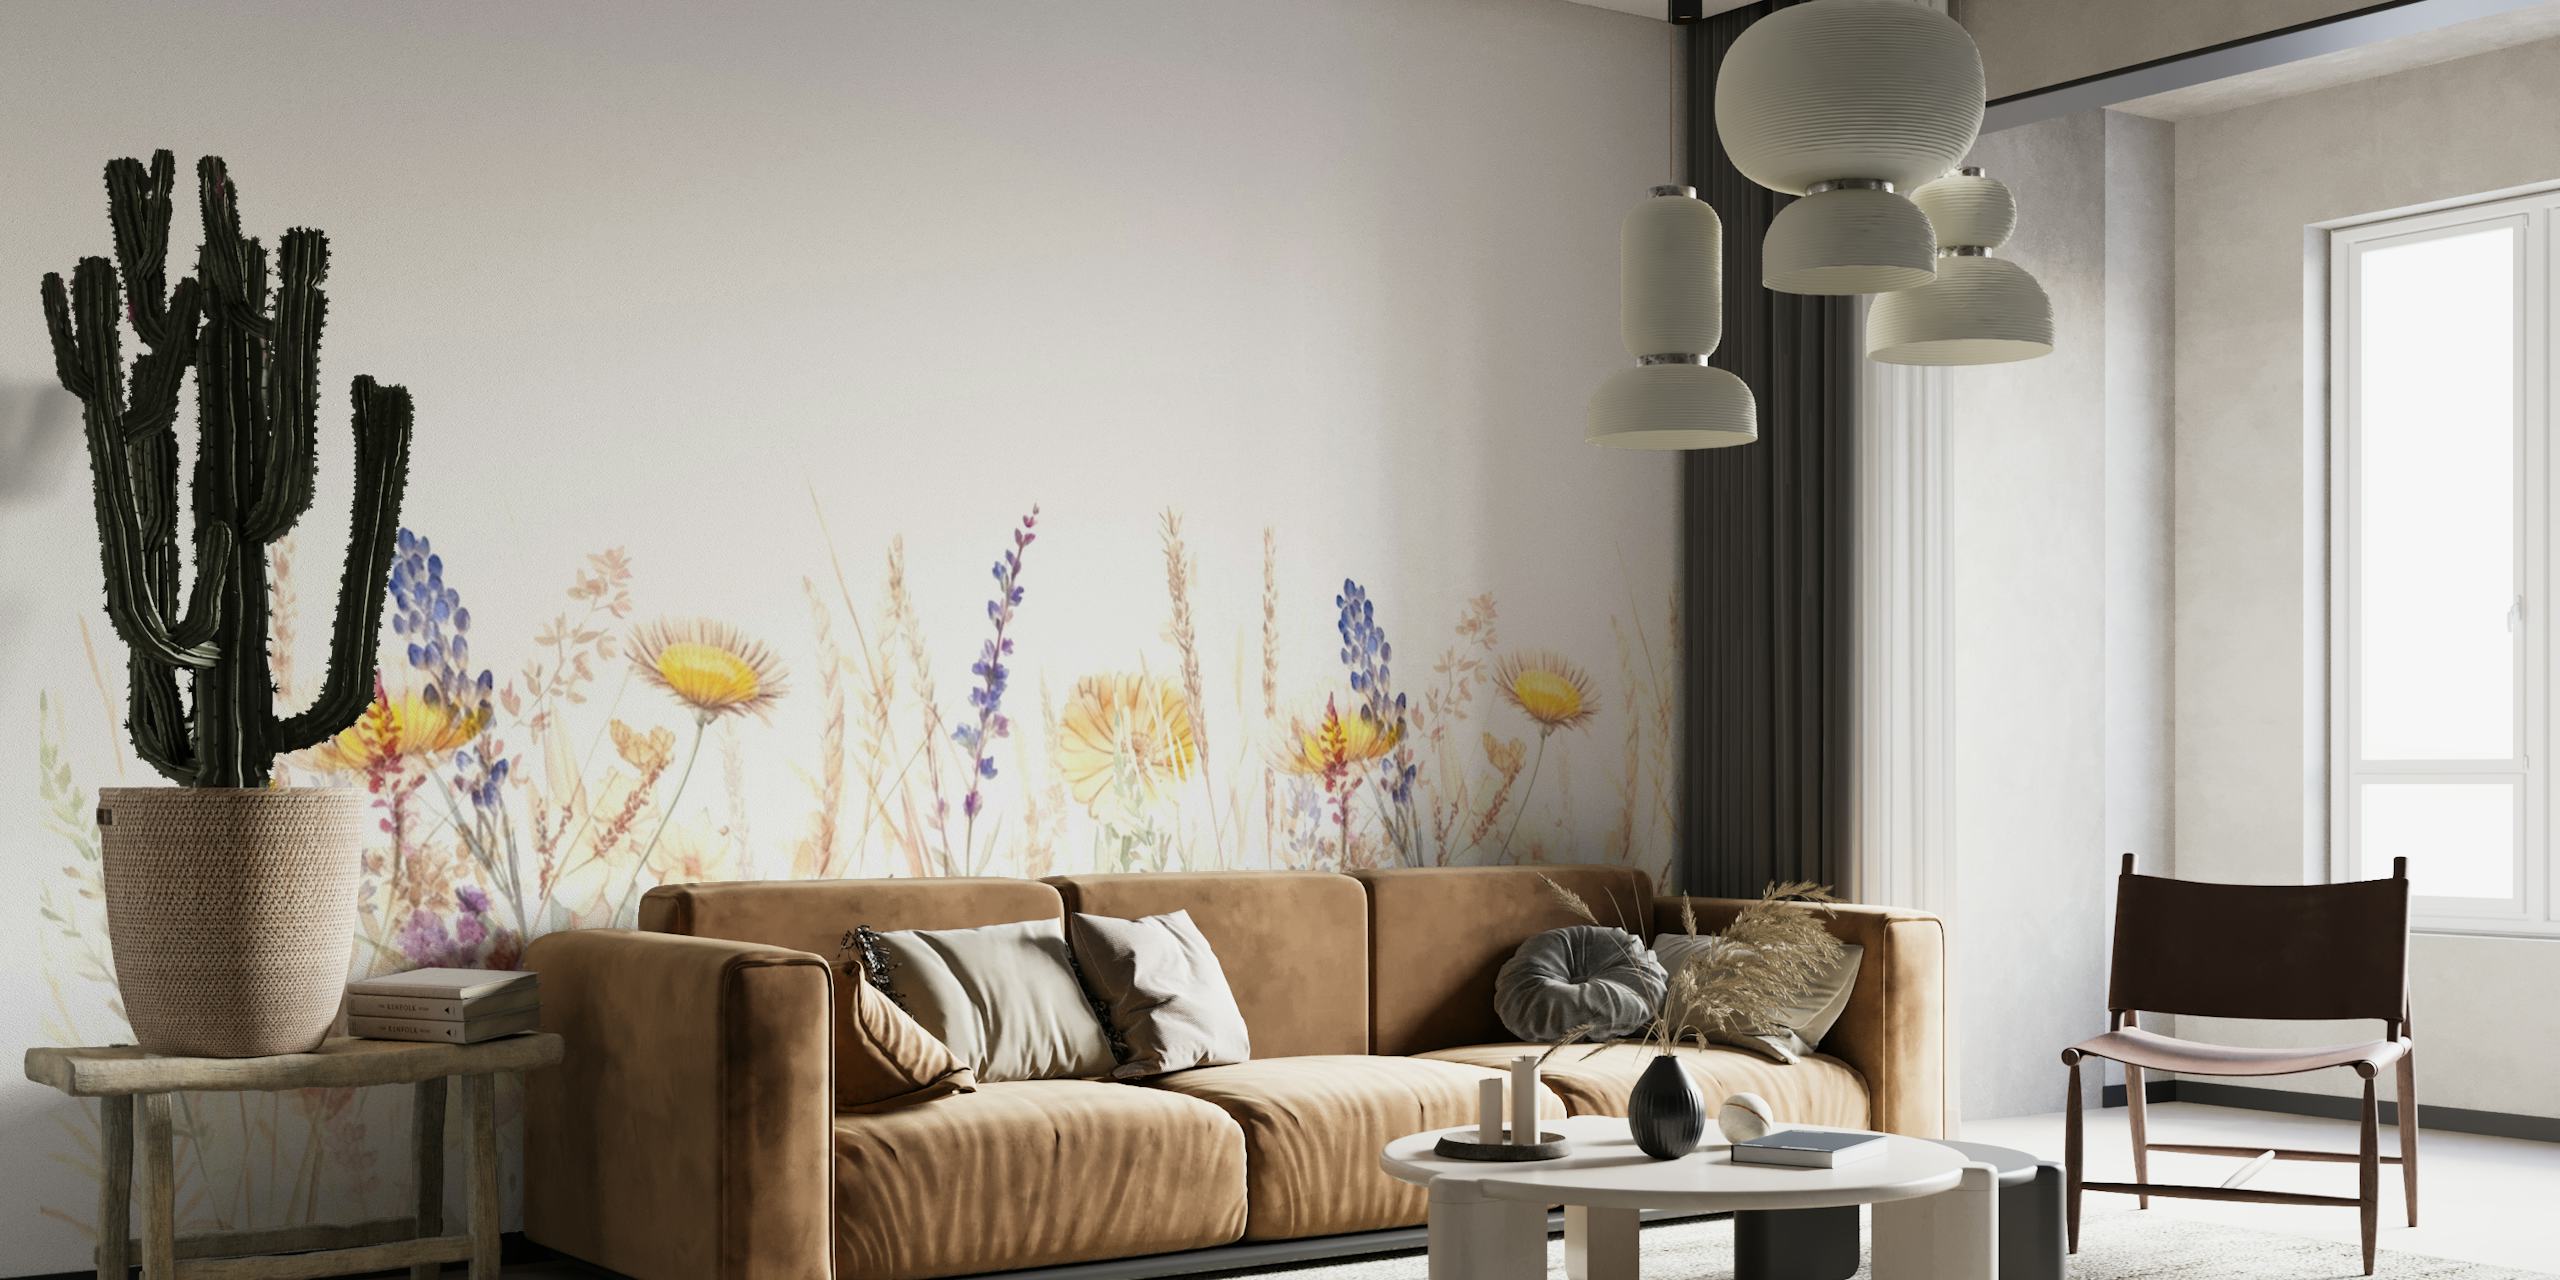 Mirna zidna slika na livadi s divljim cvijećem s nježnim pastelnim poljskim cvijećem na bijeloj pozadini